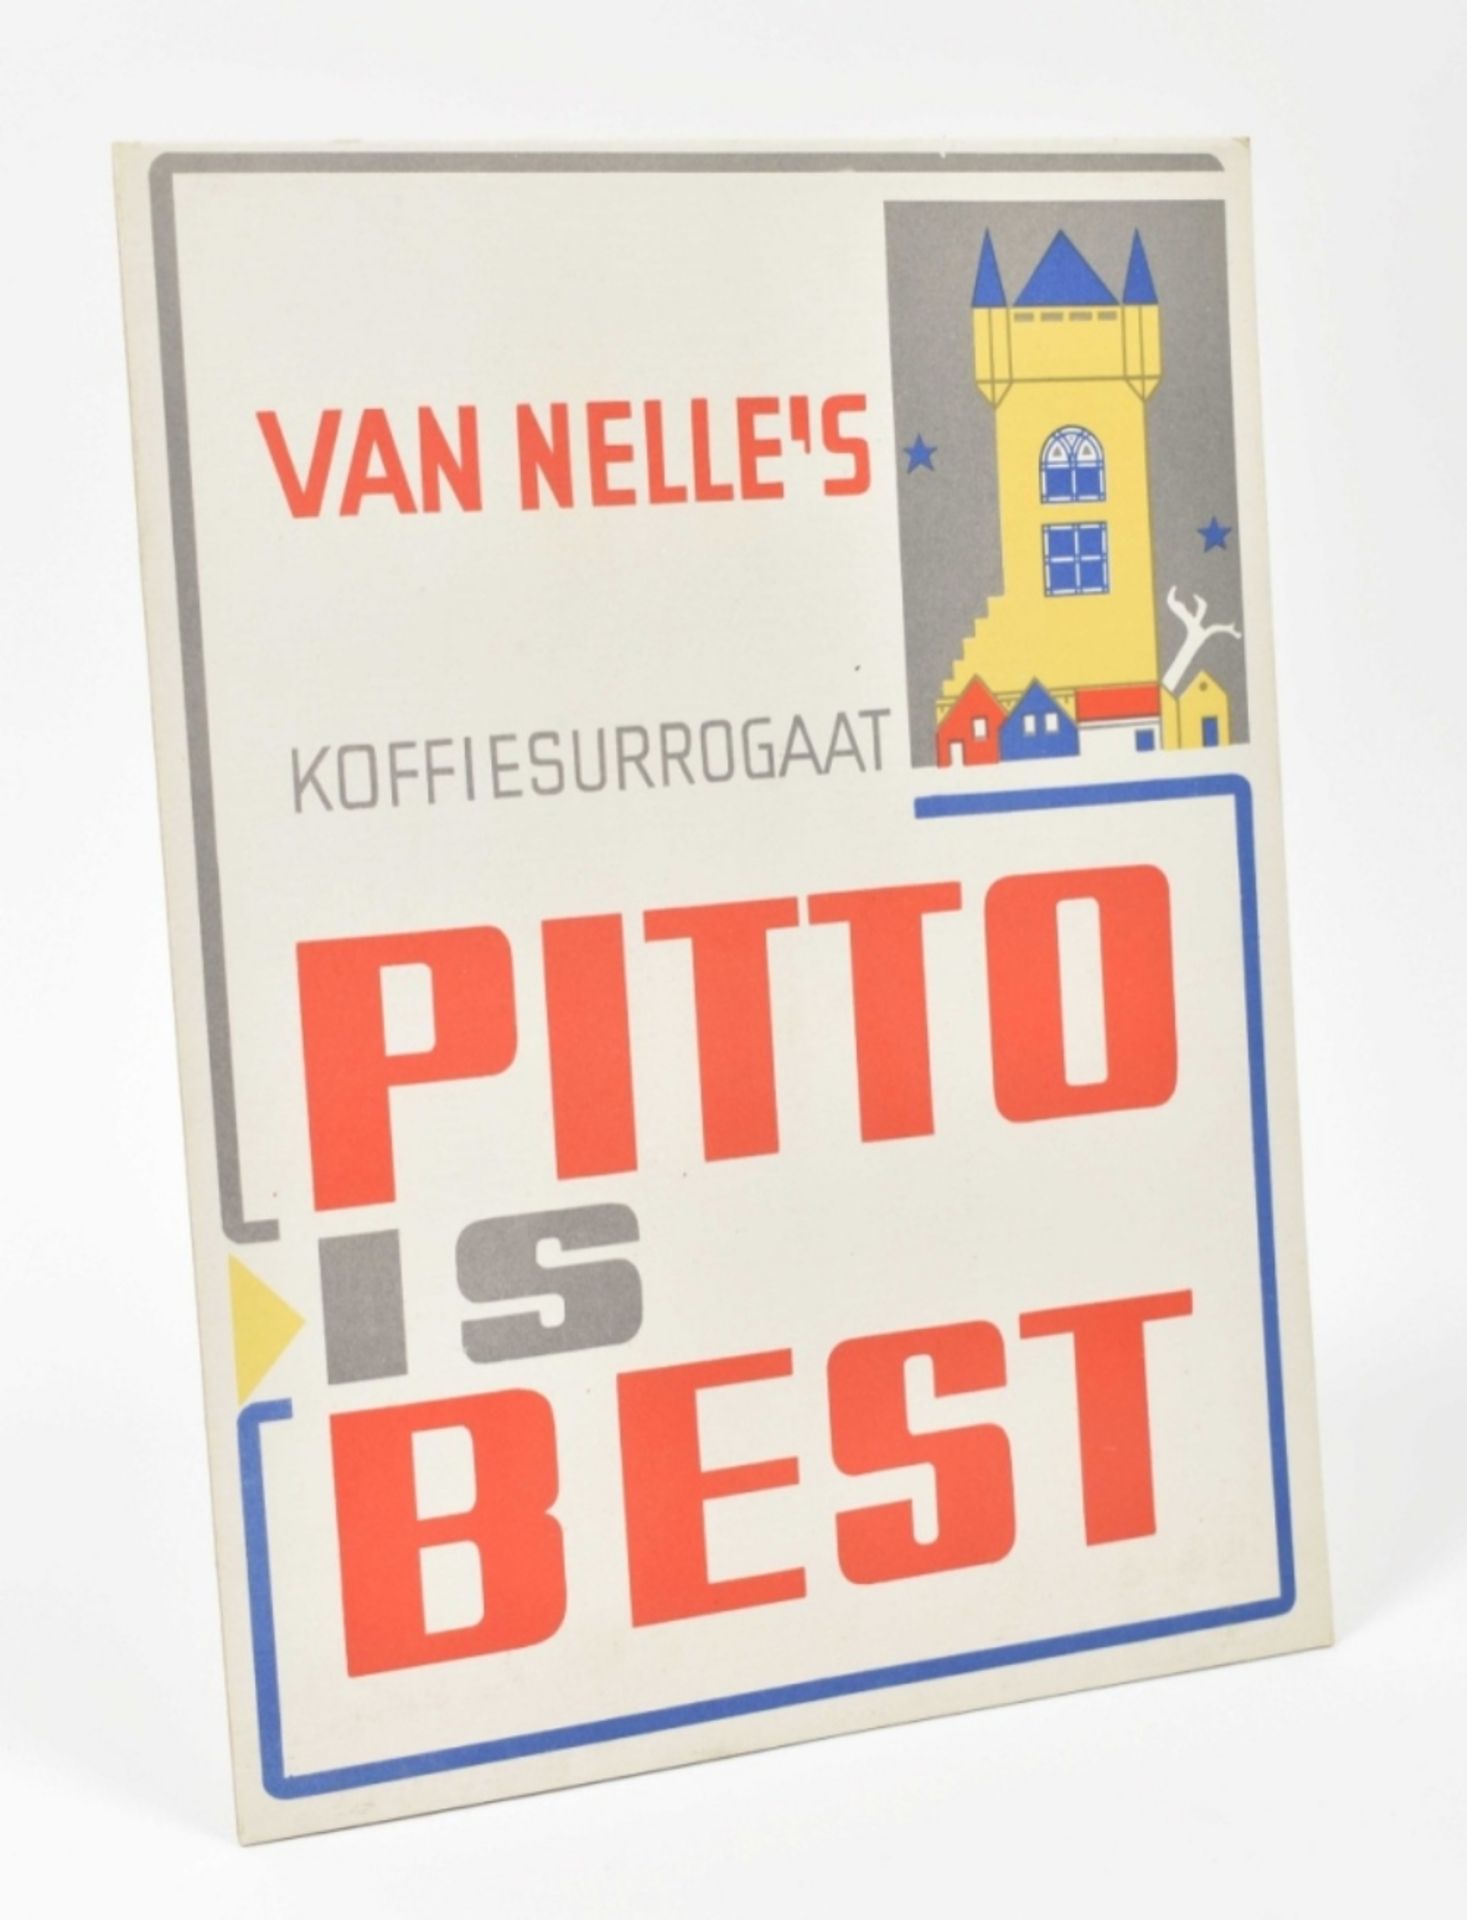 Pieter den Besten (1884-1972). Van Nelle's Koffiesurrogaat Pitto is Best - Bild 2 aus 4